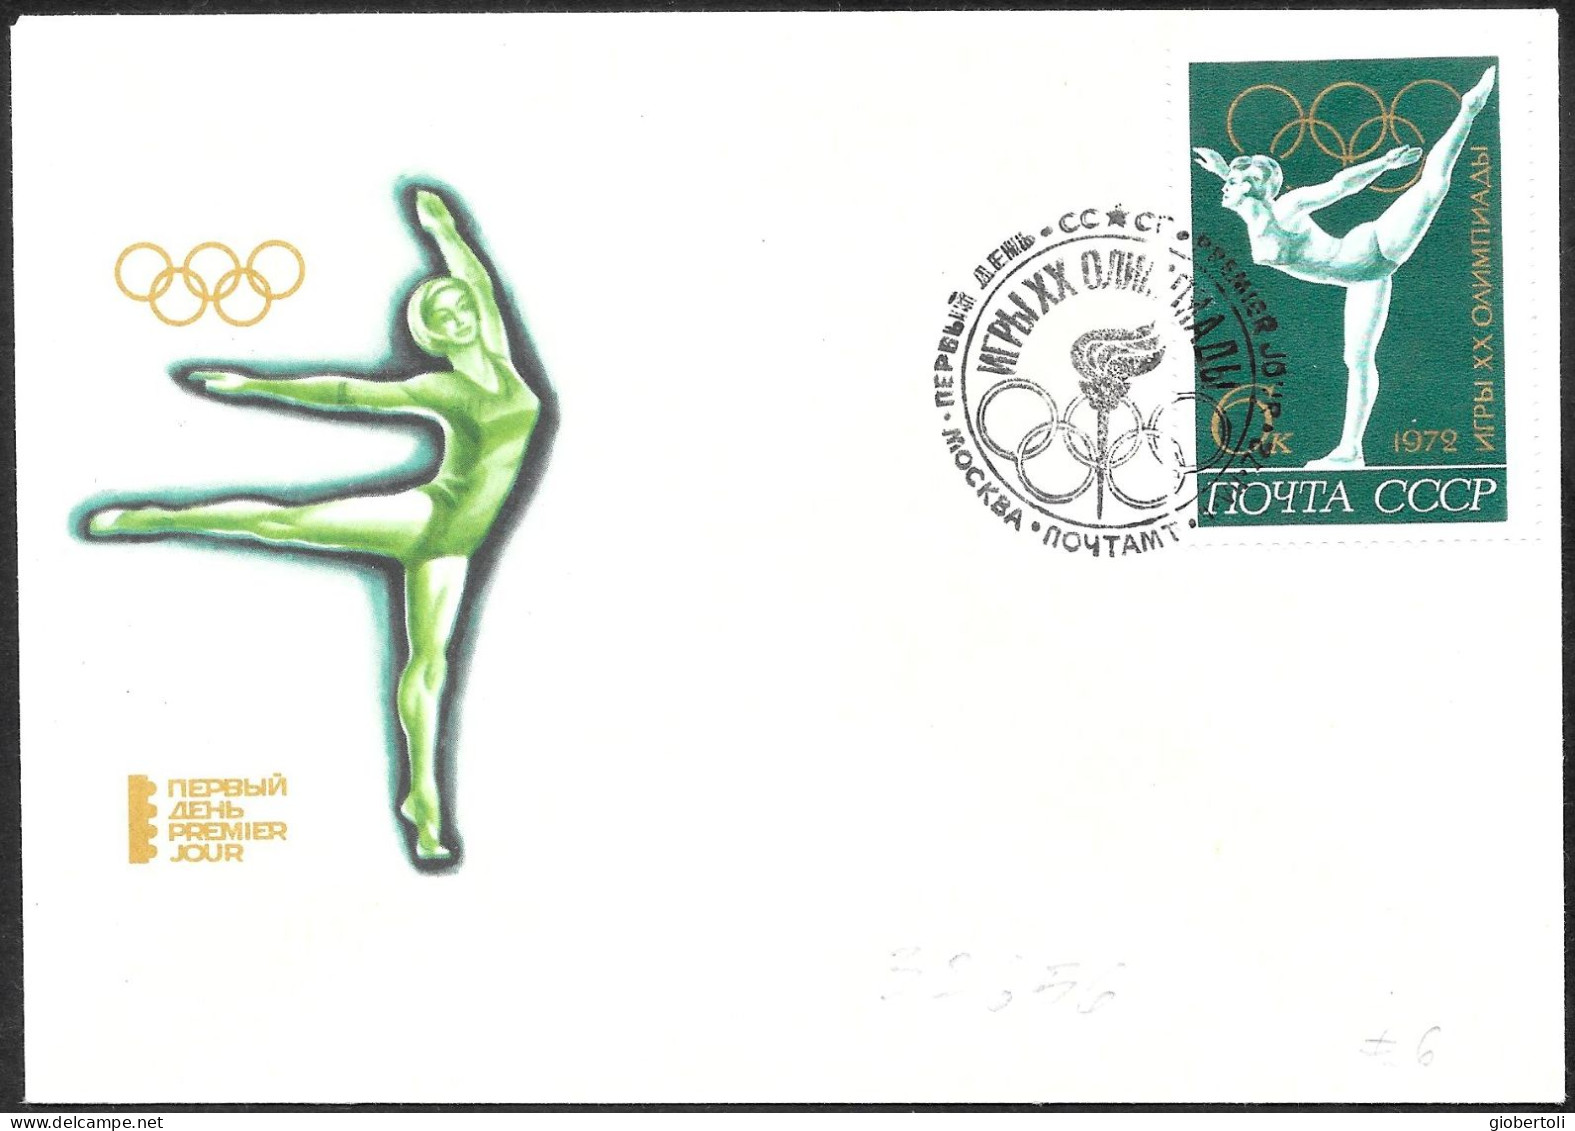 URSS: FDC, Ginnastica Femminile, Women's Gymnastics, Gymnastique Féminine - Sommer 1972: München